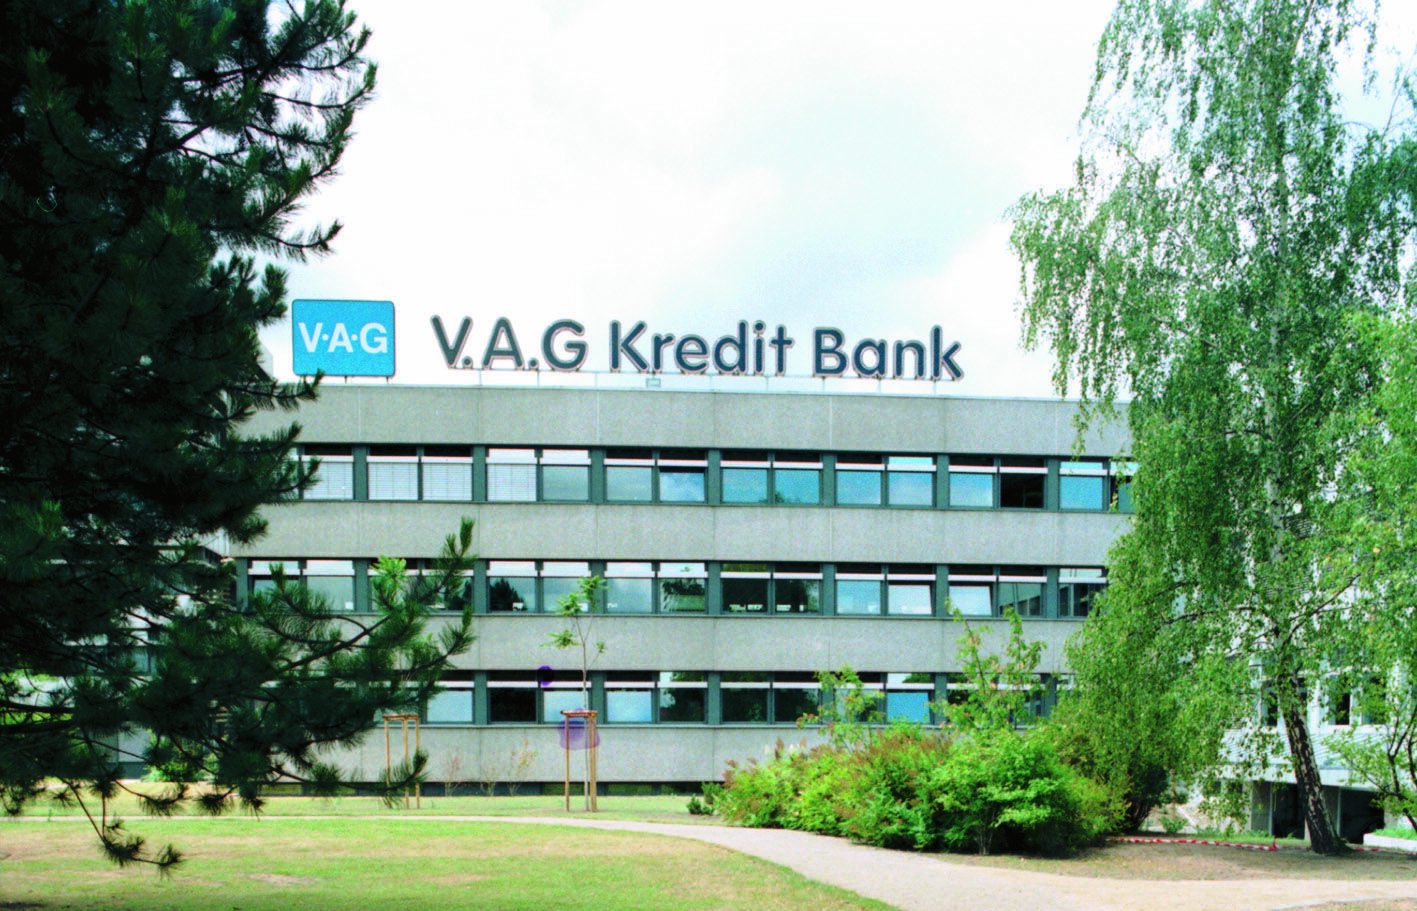 V.A.G BANK IN BRAUNSCHWEIG